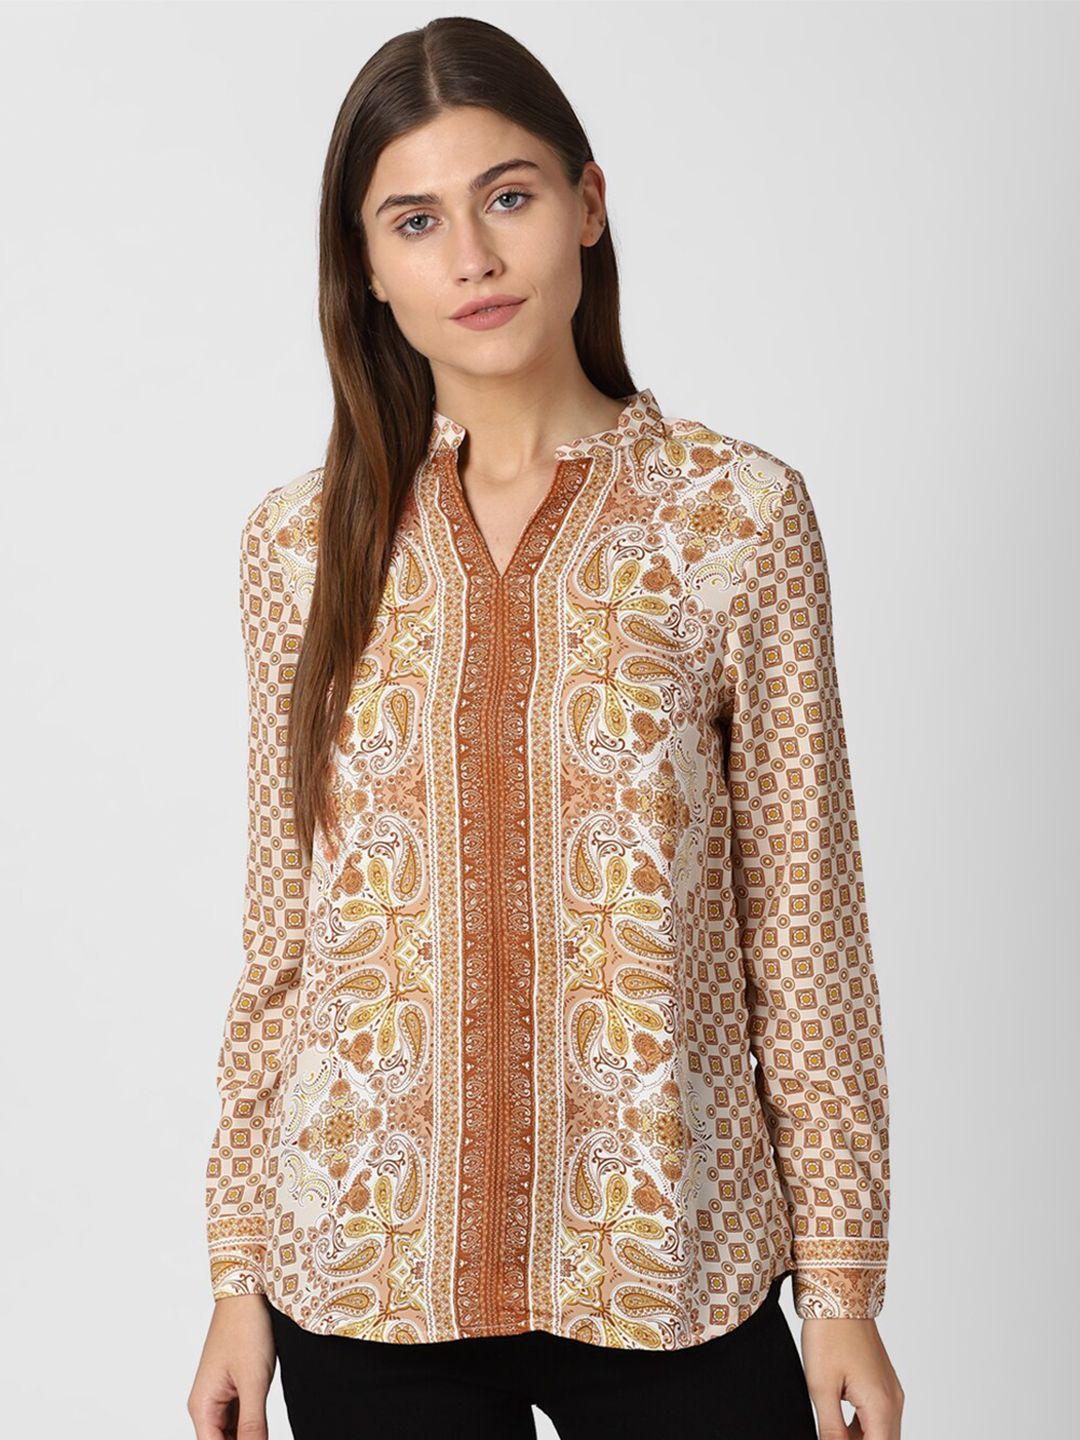 van heusen woman brown & beige ethnic print shirt style top